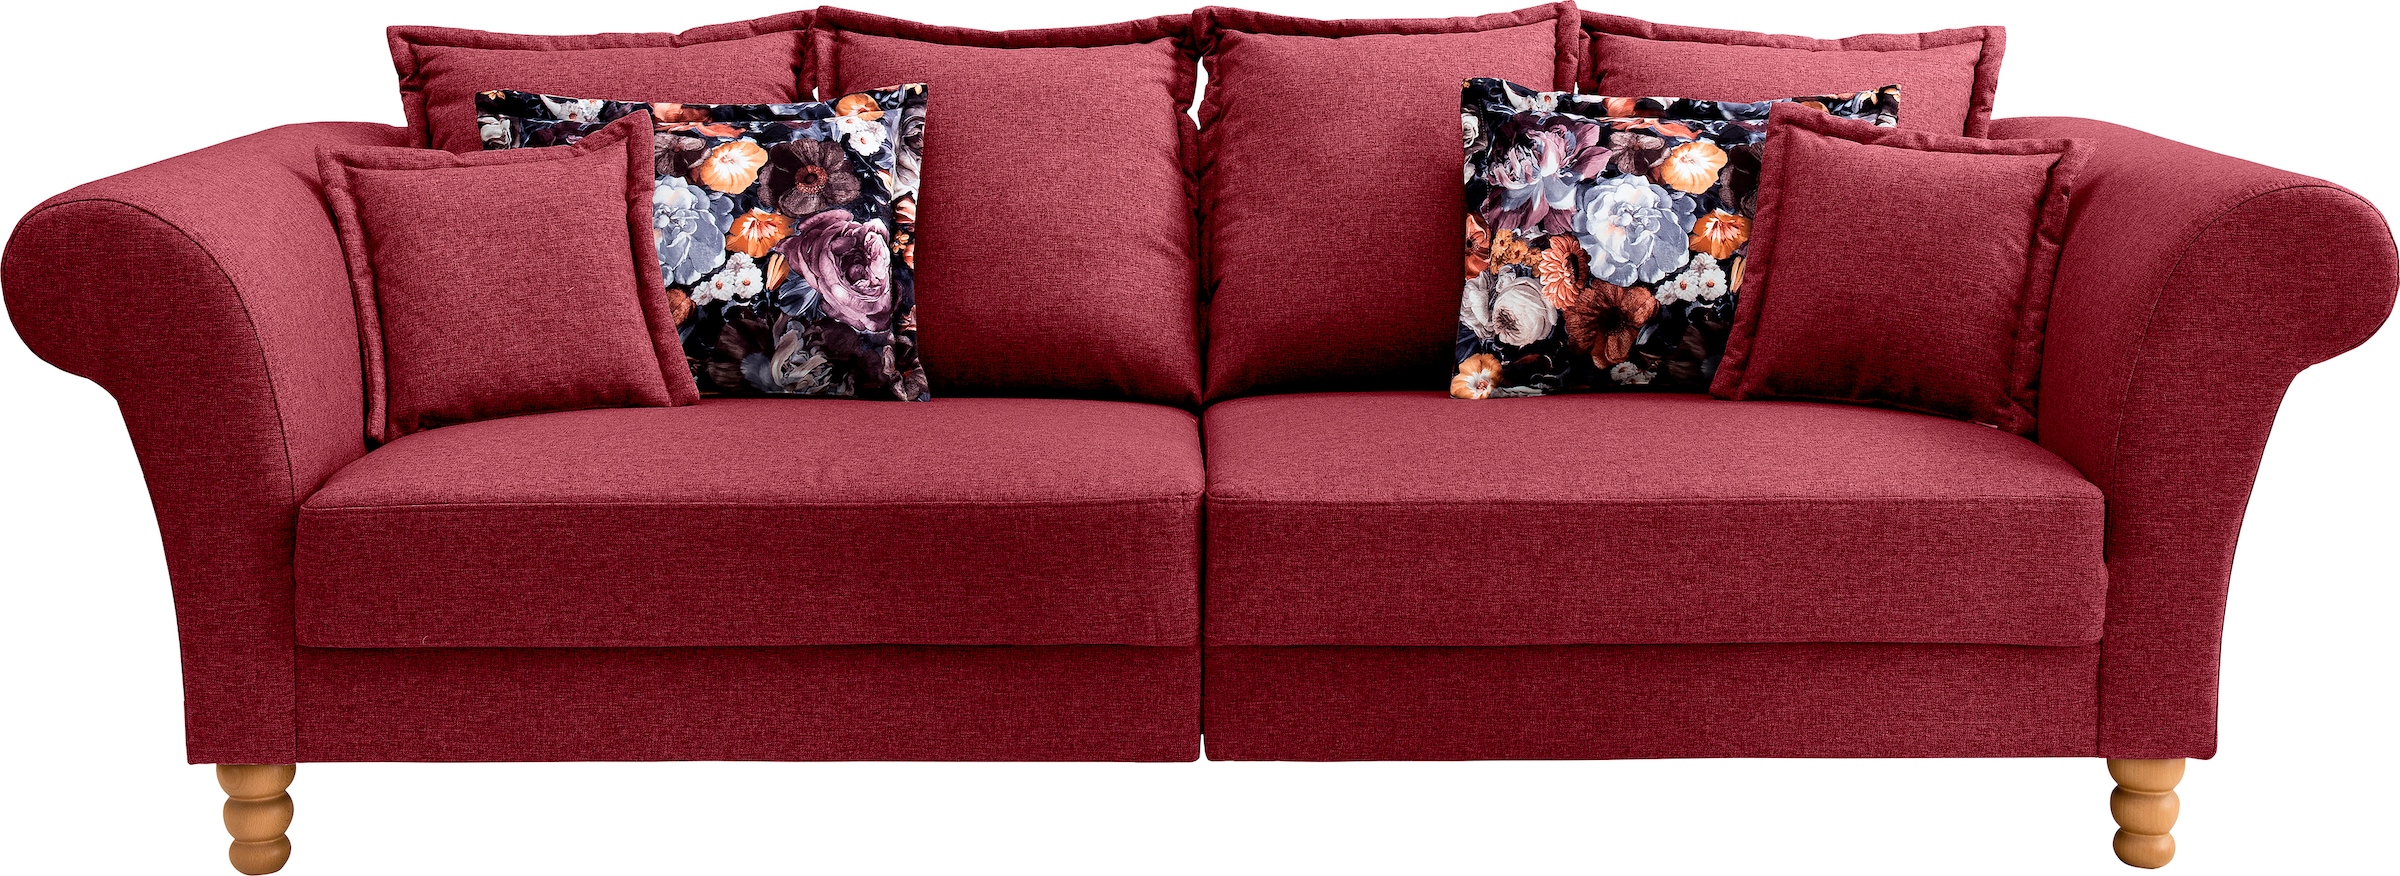 Home affaire Big-Sofa »Tassilo«